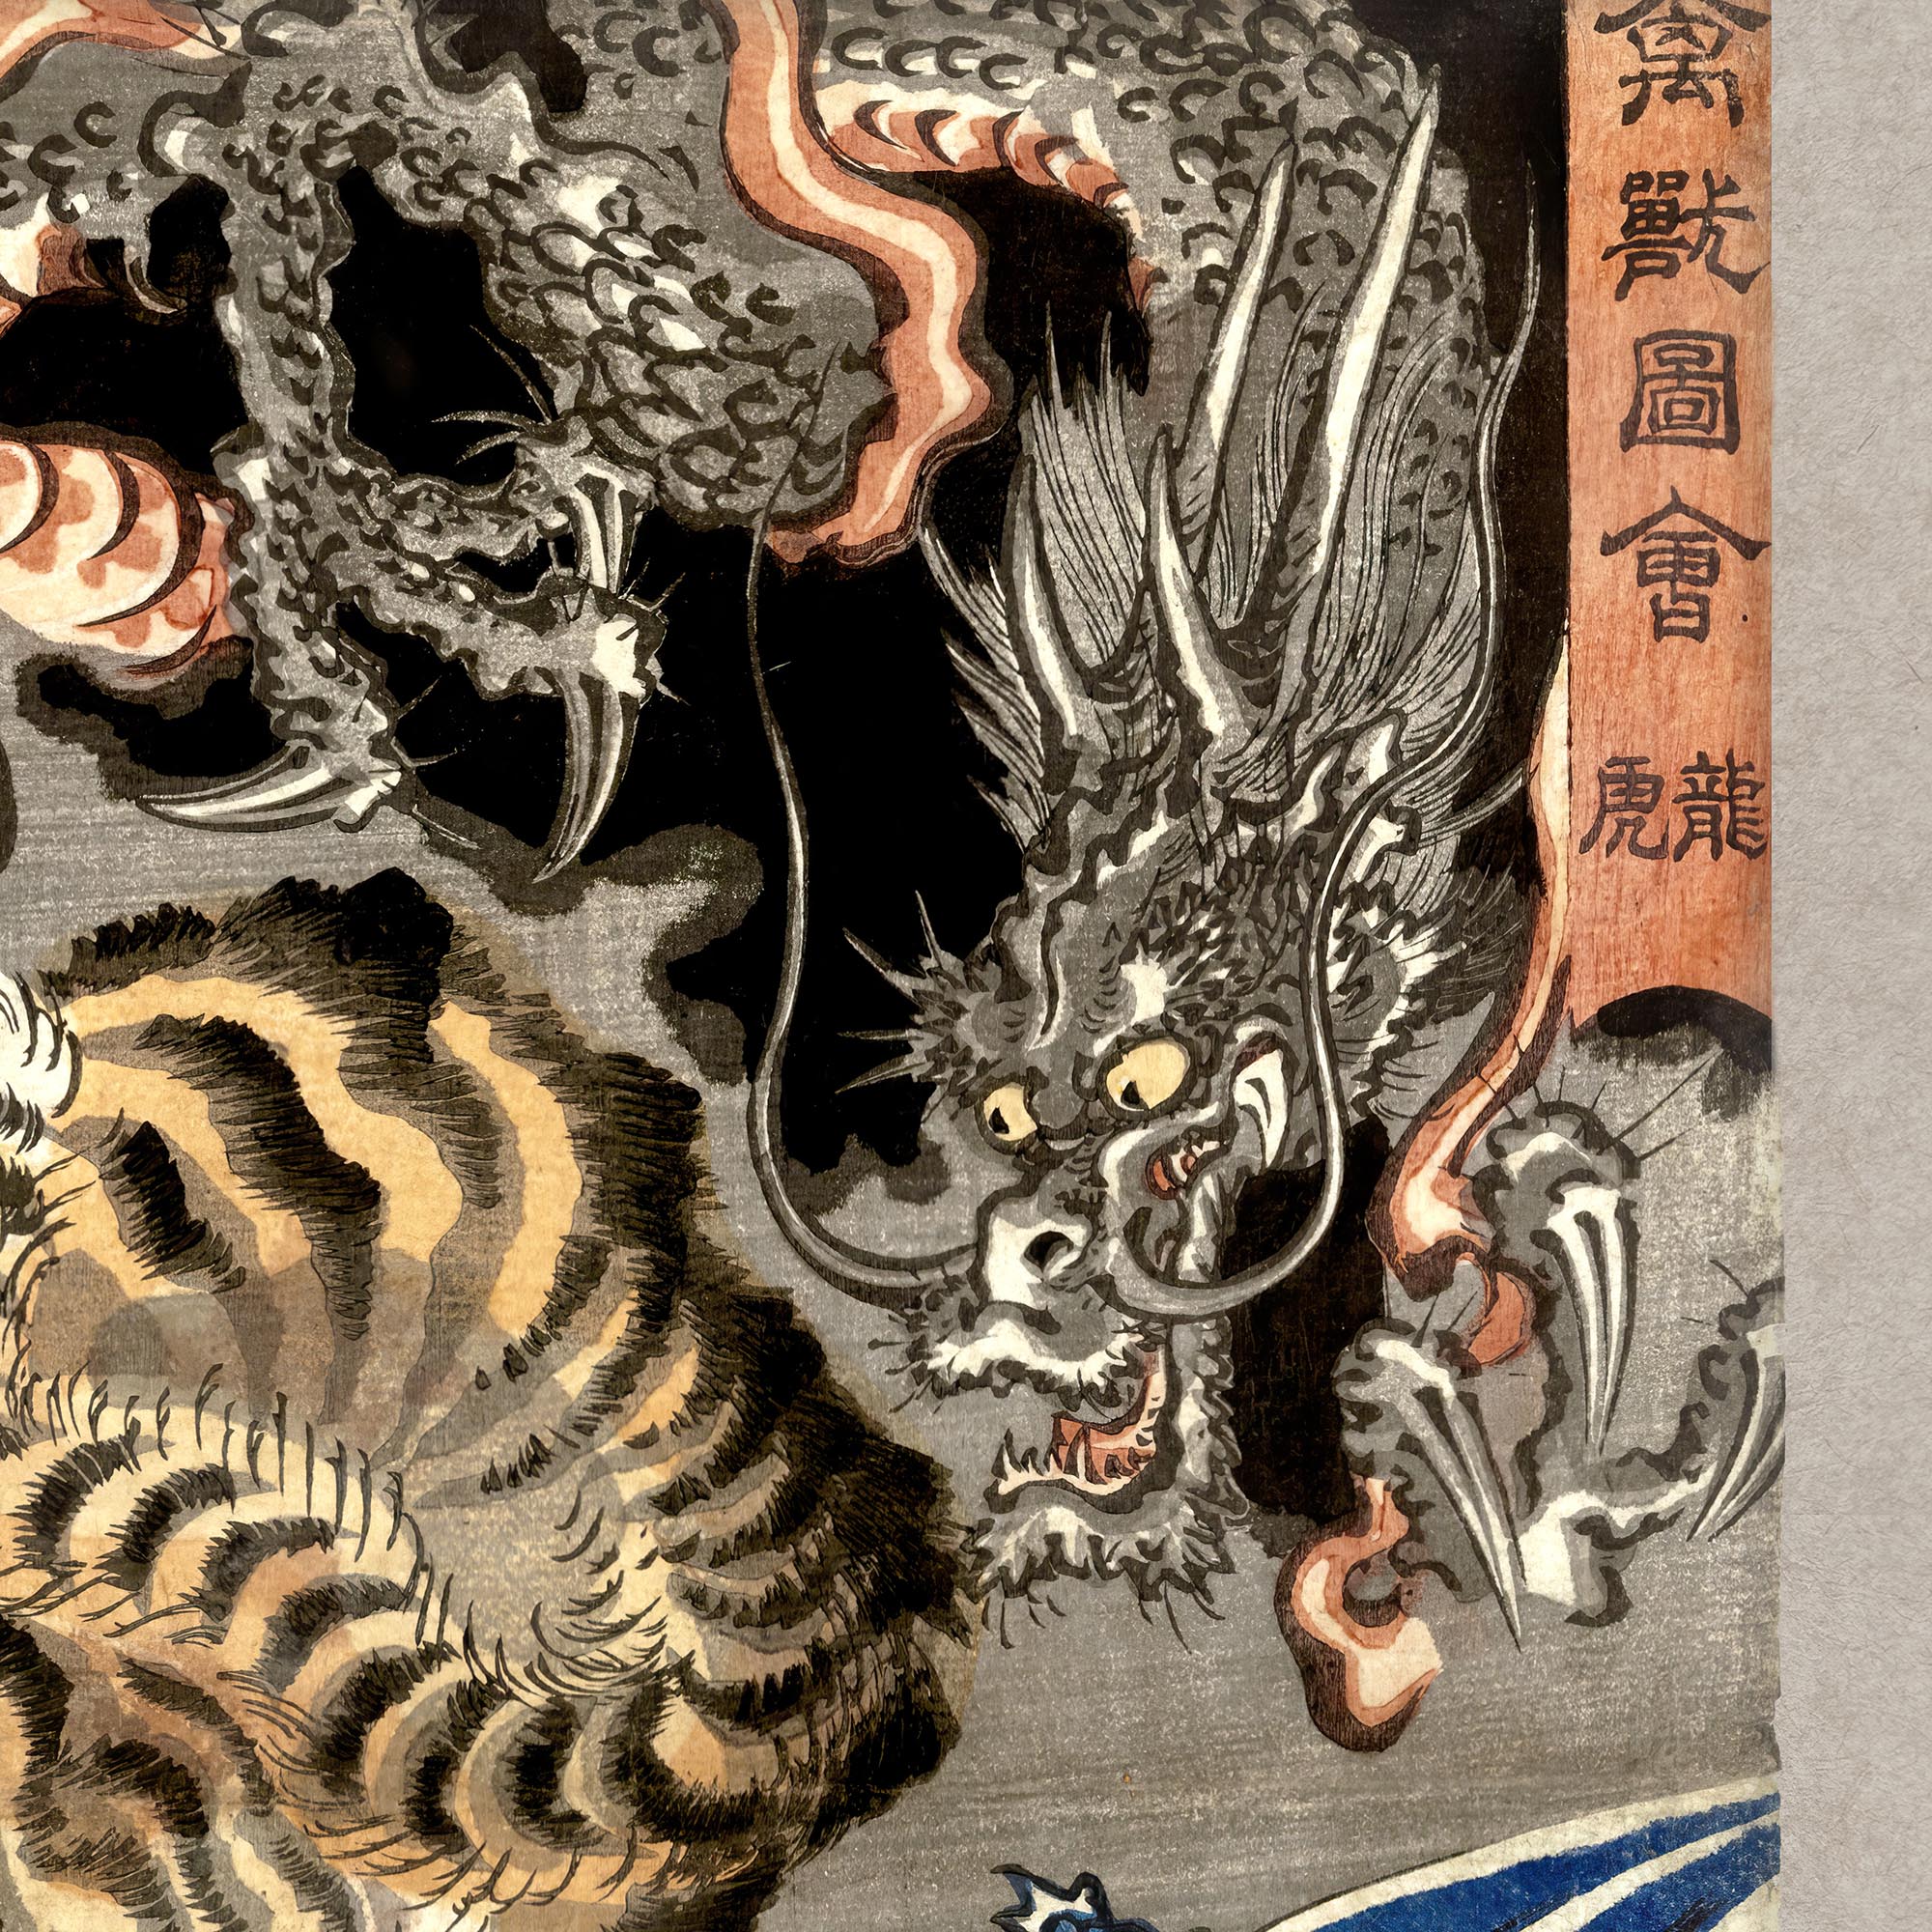 Framed Print 8"x12" / Black Frame Tiger and Dragon (Yin and Yang) Japanese Mythology, Kuniyoshi Ukiyo-e Antique Serpent Wood Block Yokai Asian Decor Framed Art Print